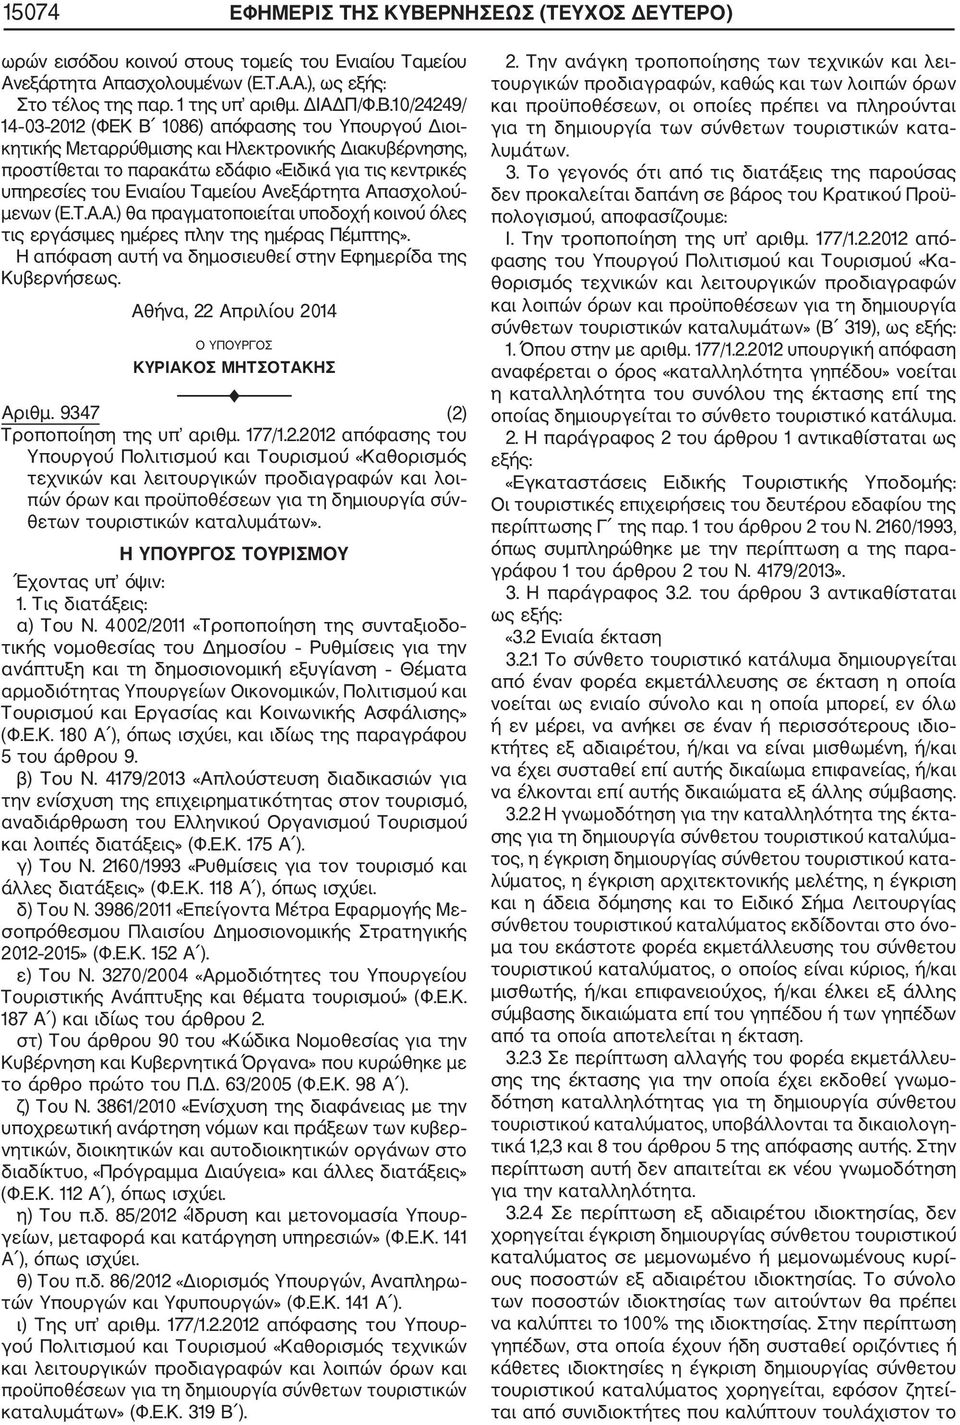 10/24249/ 14 03 2012 (ΦΕΚ Β 1086) απόφασης του Υπουργού Διοι κητικής Μεταρρύθμισης και Ηλεκτρονικής Διακυβέρνησης, προστίθεται το παρακάτω εδάφιο «Ειδικά για τις κεντρικές υπηρεσίες του Ενιαίου